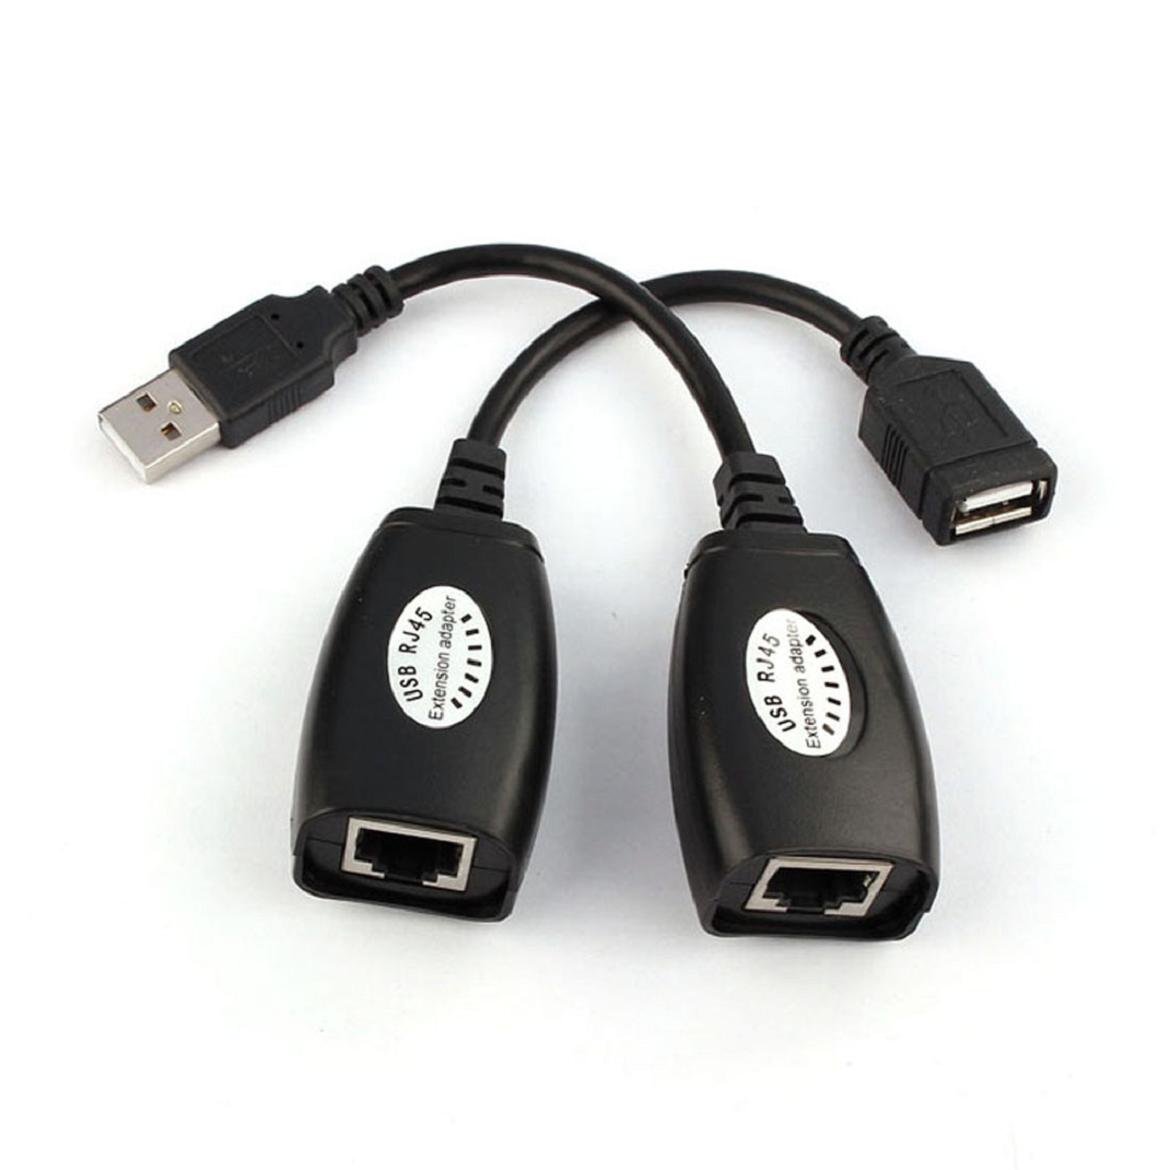 Adapter USB RJ45 Extension up 150ft Lenght – sabtm.com.tm